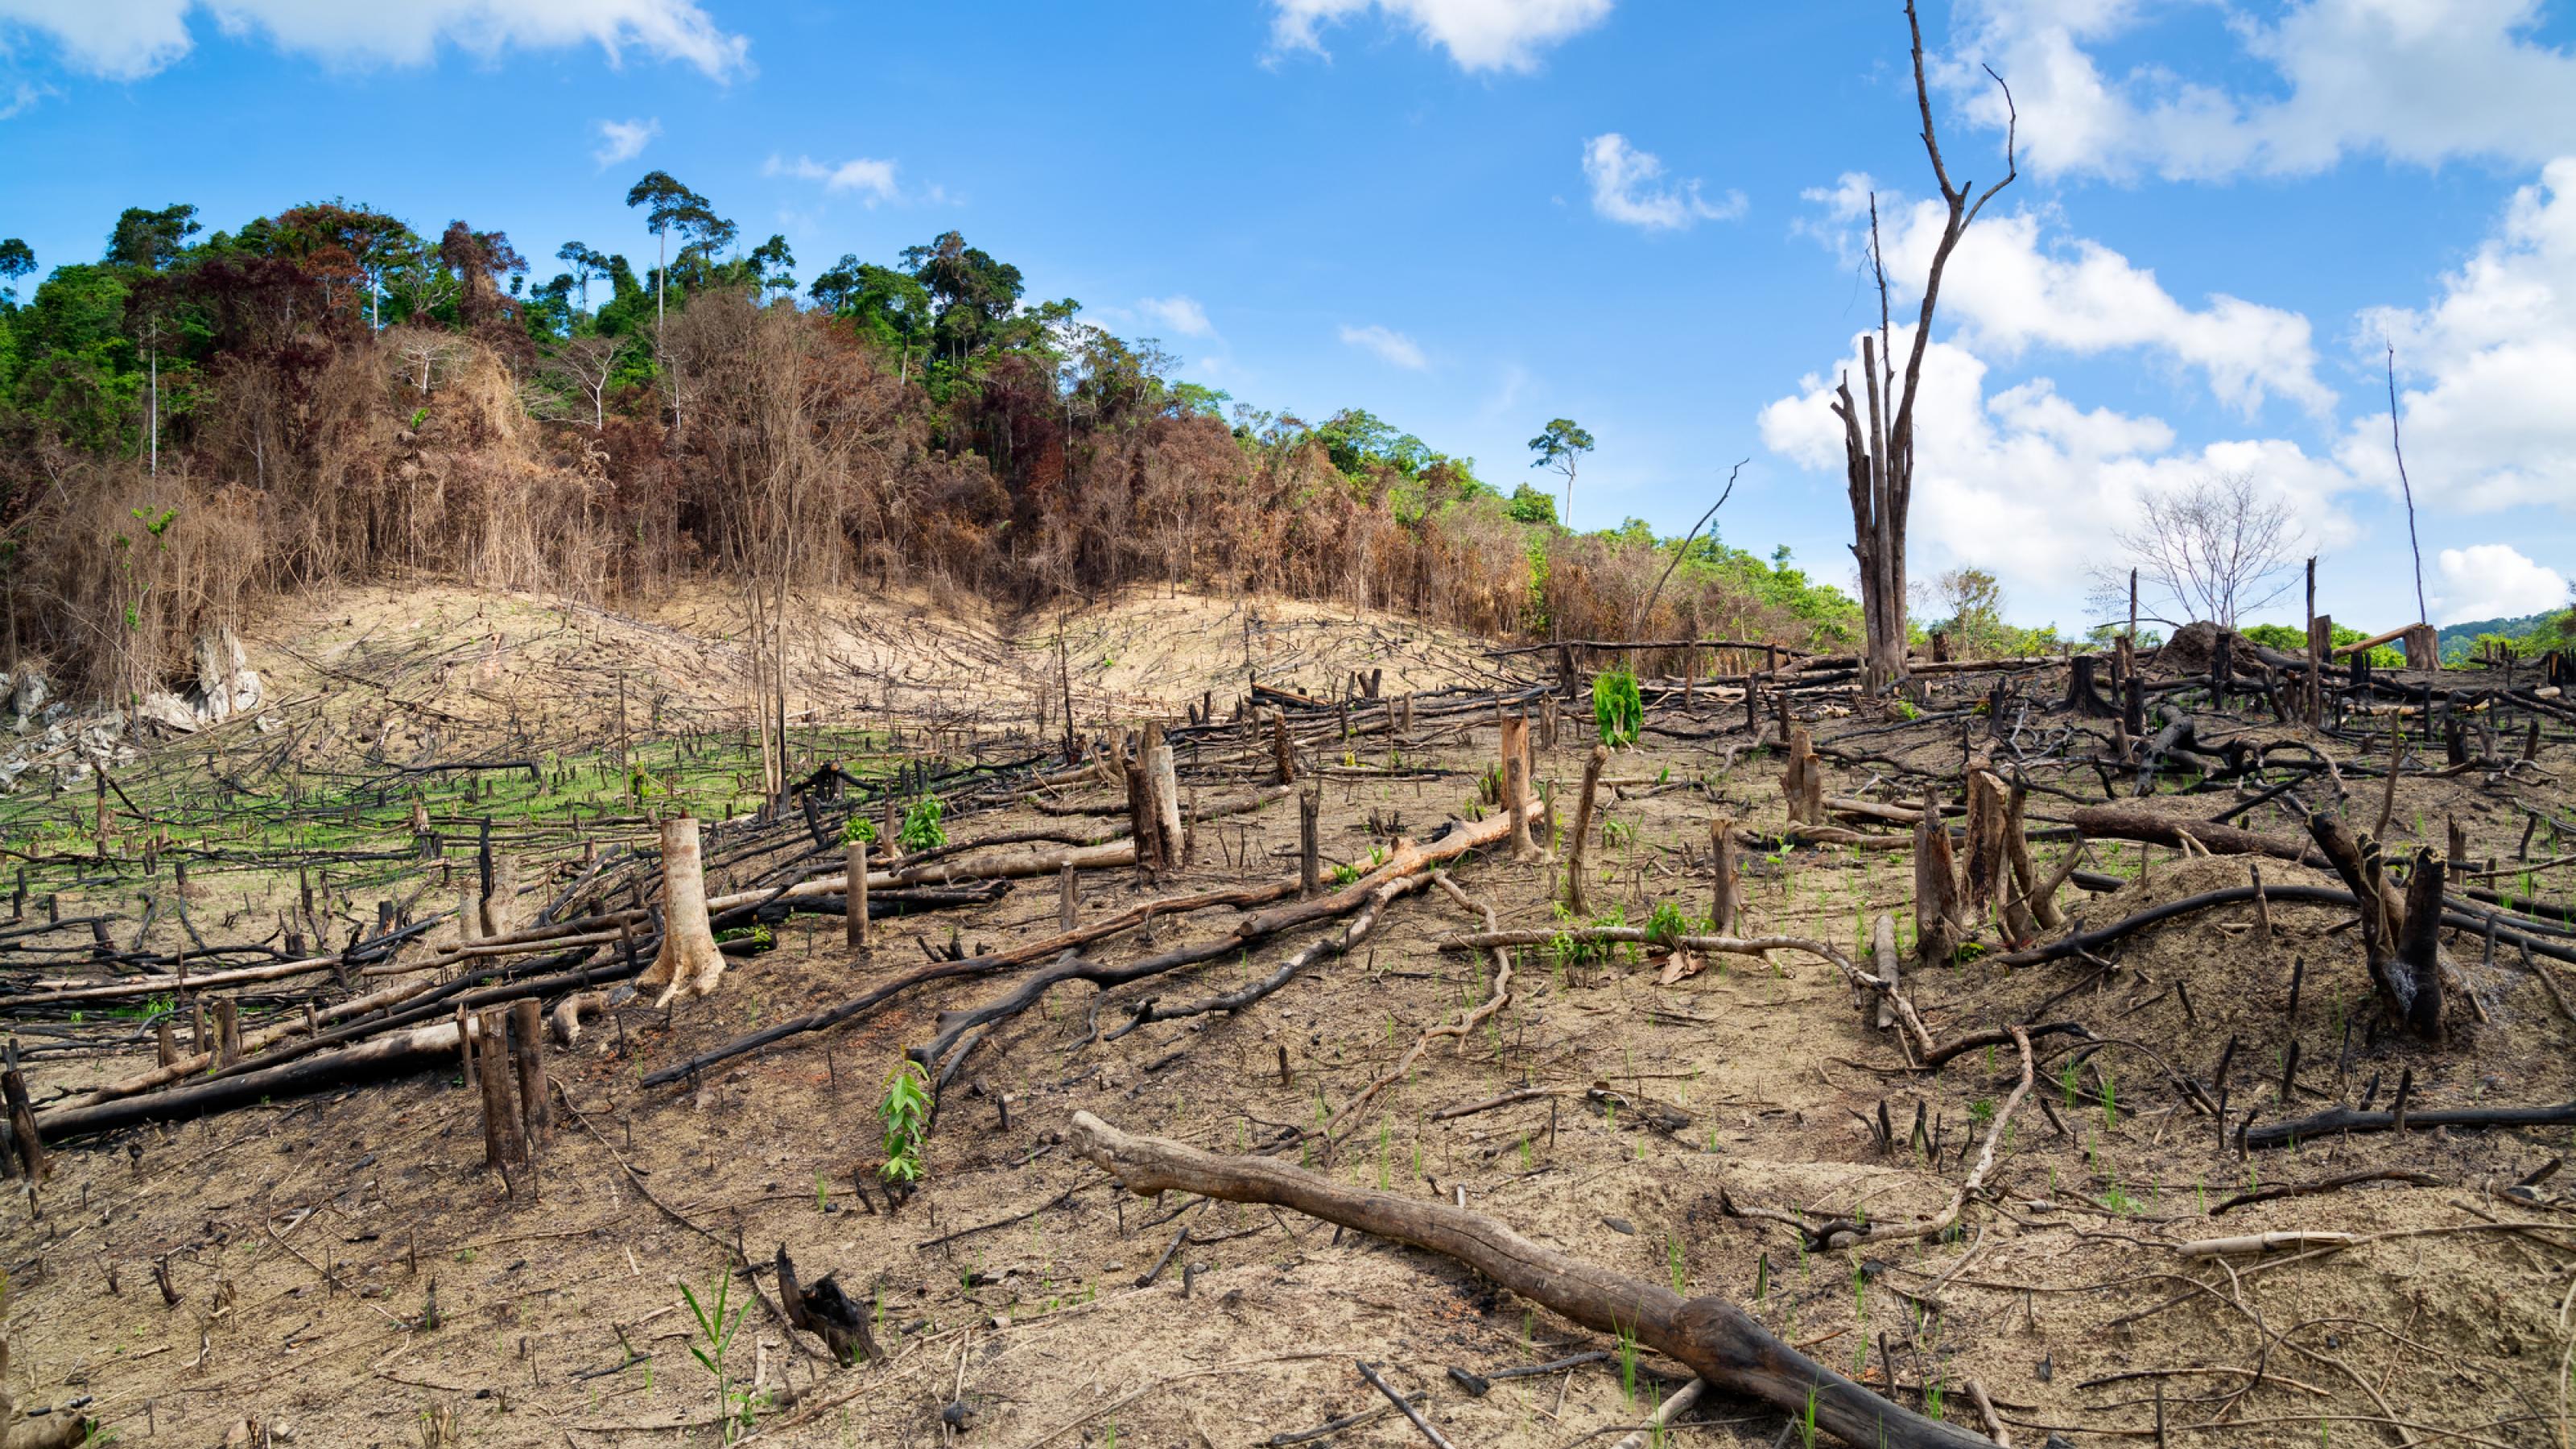 Das Bild zeigt einen zerstörten Regenwald, der teils gerodet, teils abgebrannt wurde.